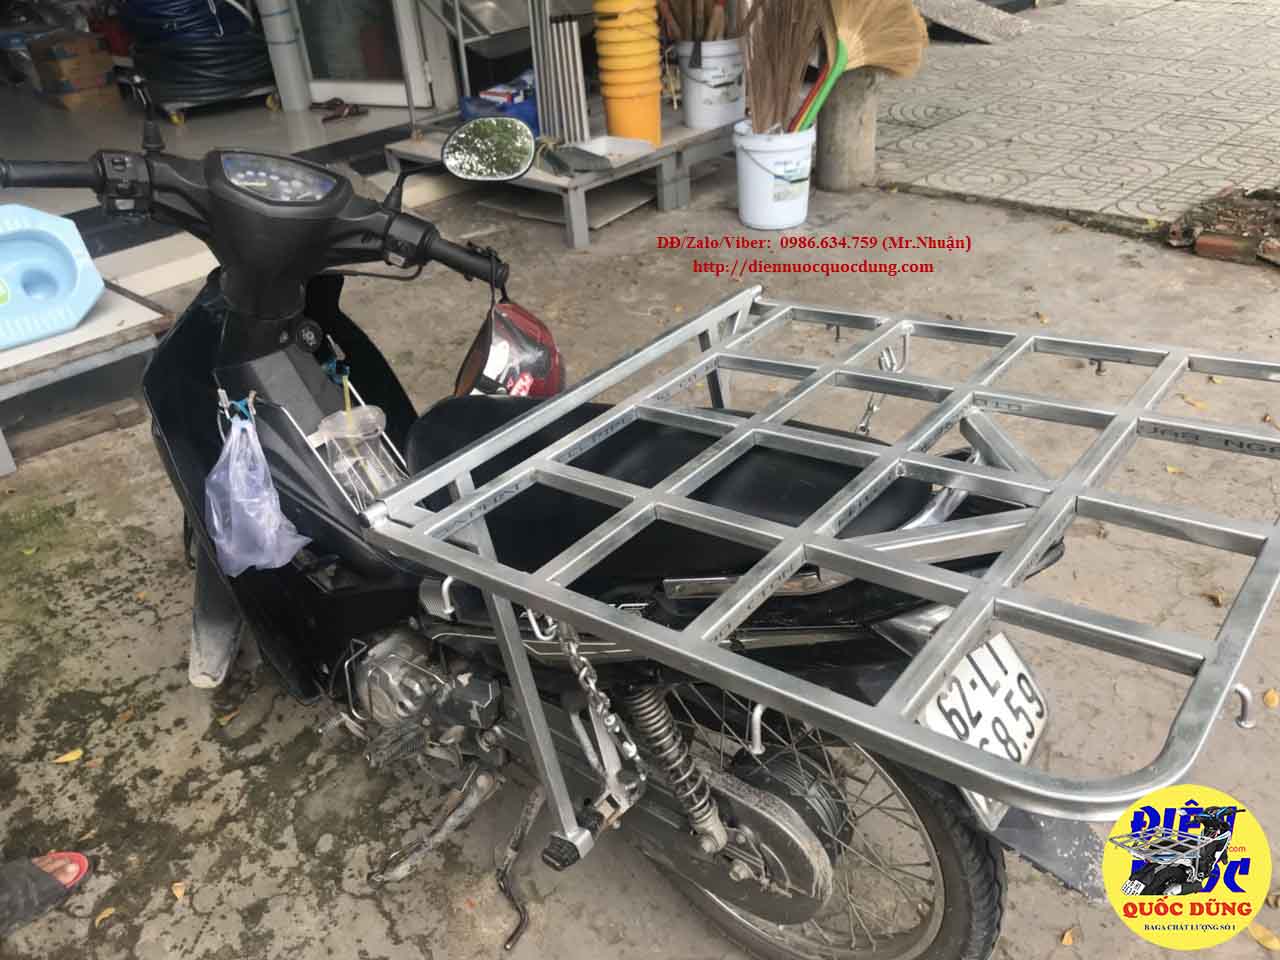 [ Baga ] giá chở hàng xe máy TpHCM - Baga Quốc Dũng